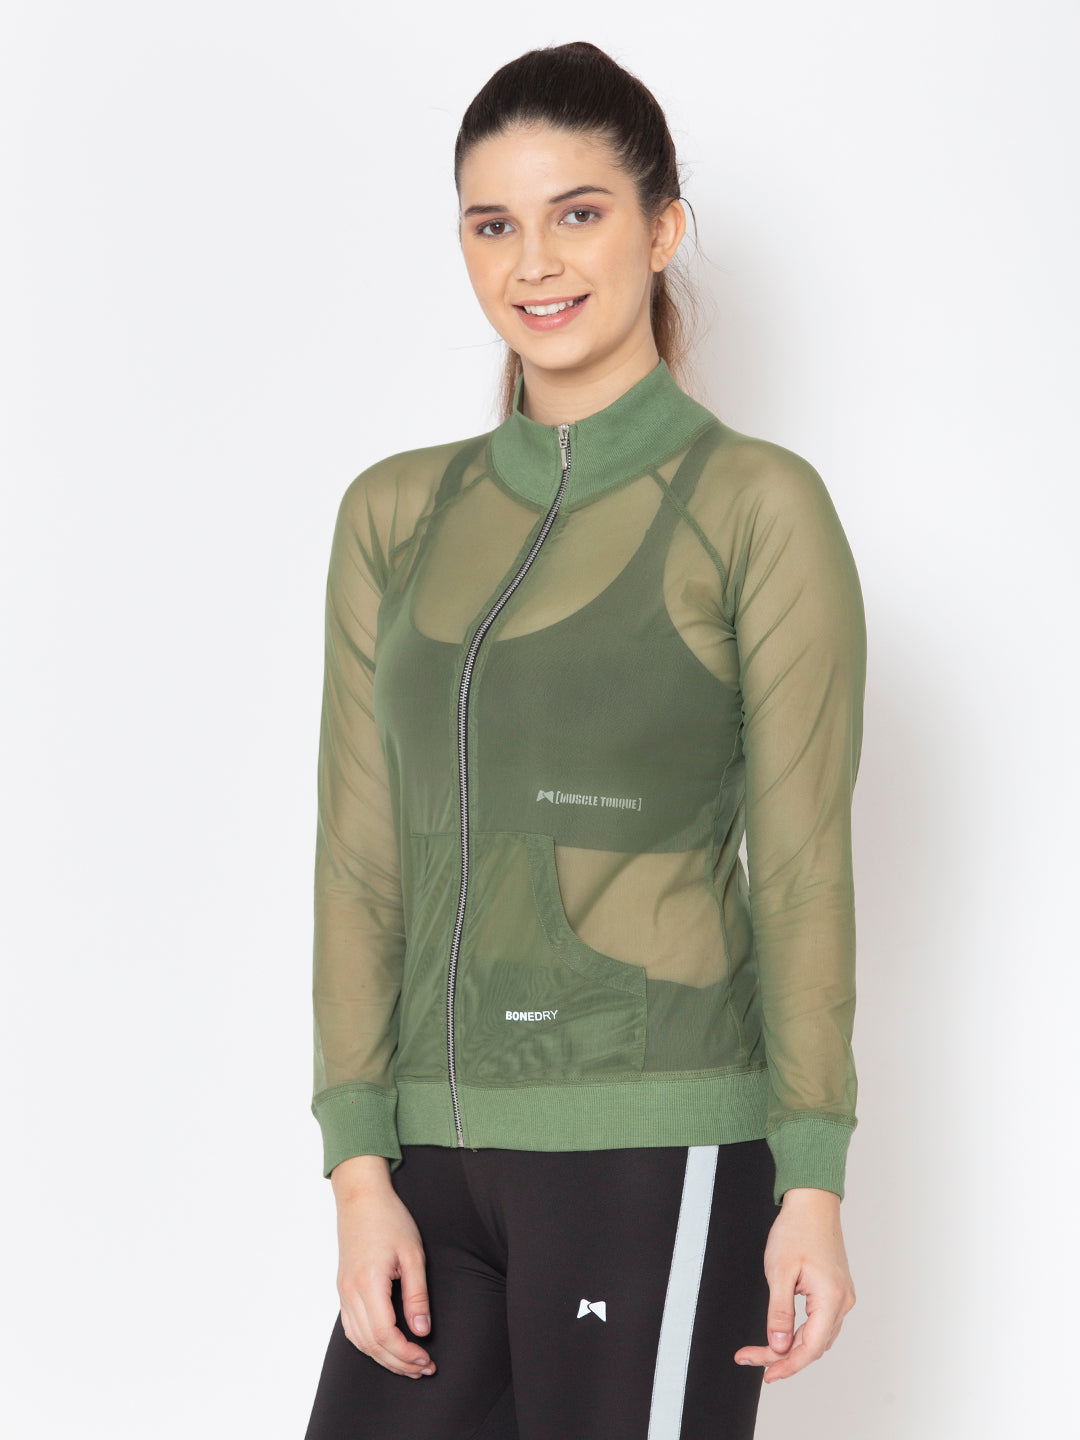 Front Zipper Mesh Sweatshirt – Olive